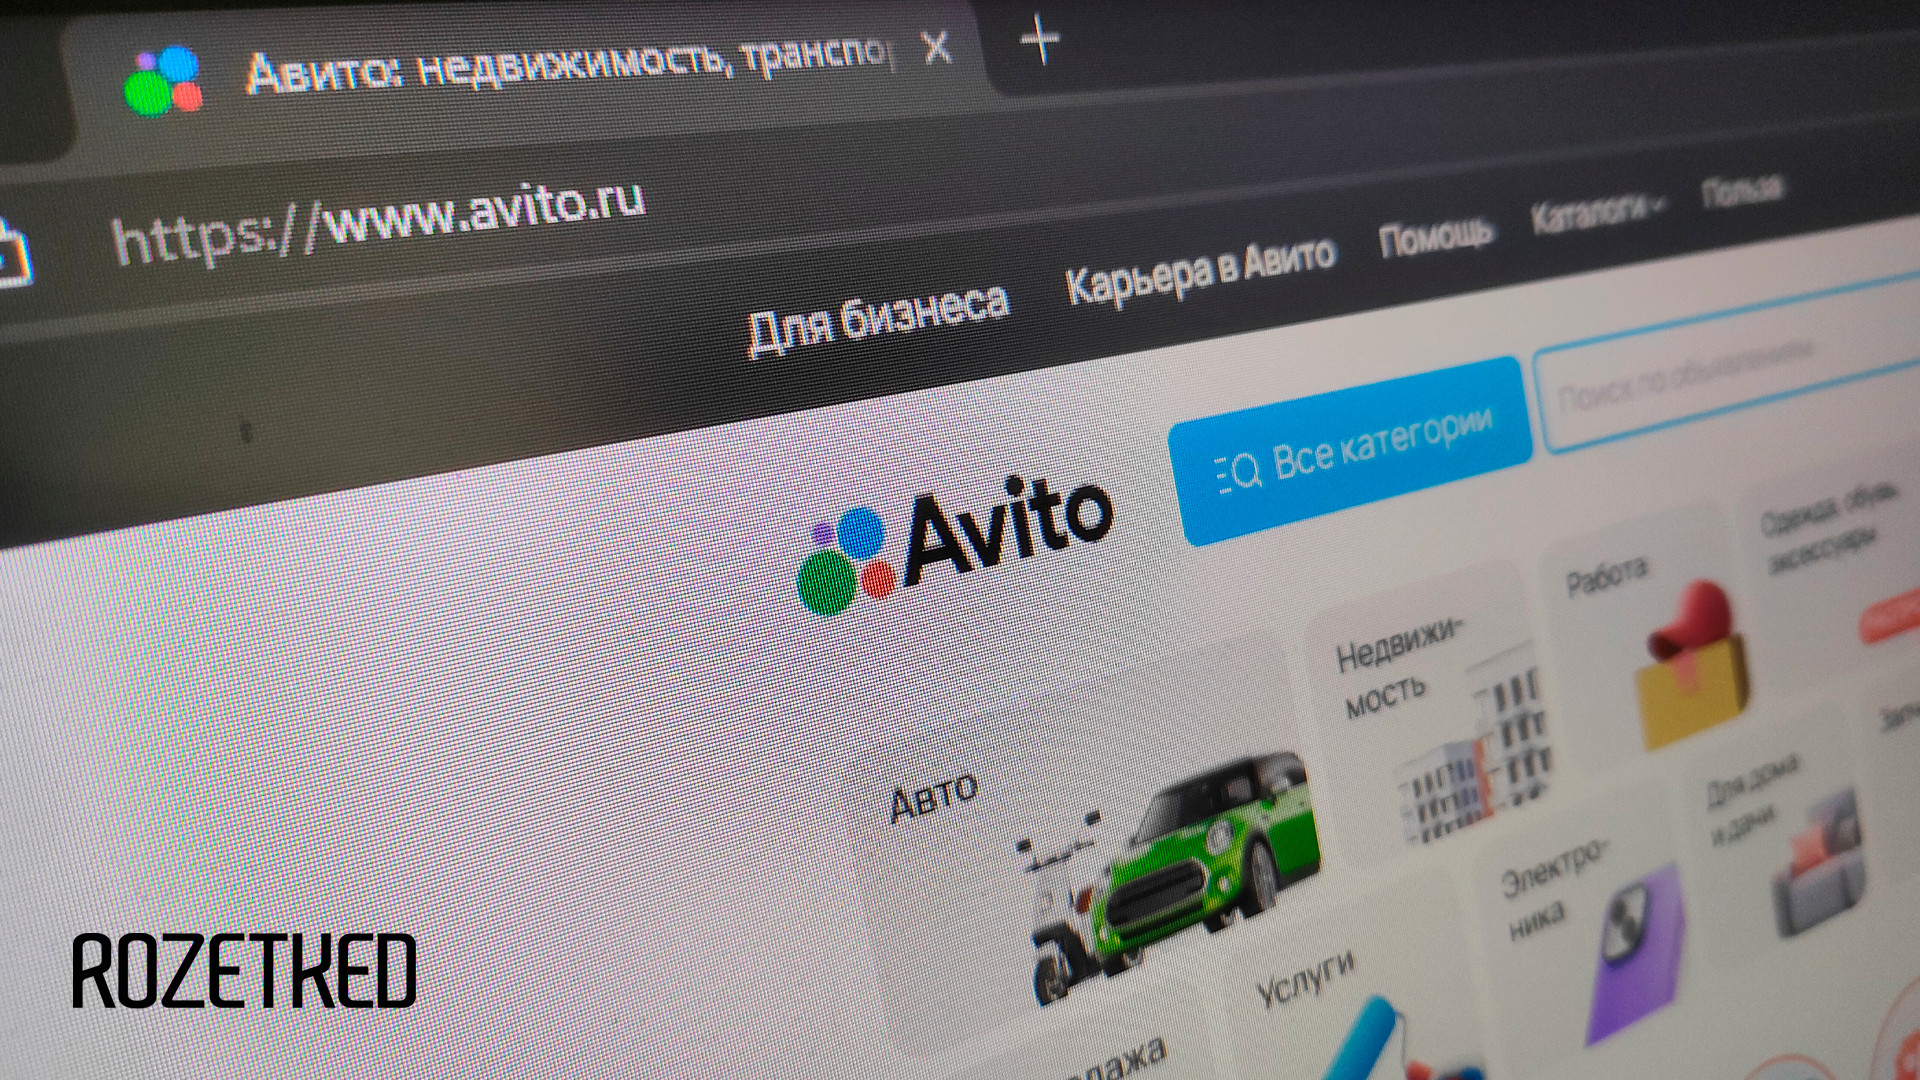 «Авито» запустил раздел «Авито Молл» с новыми товарами